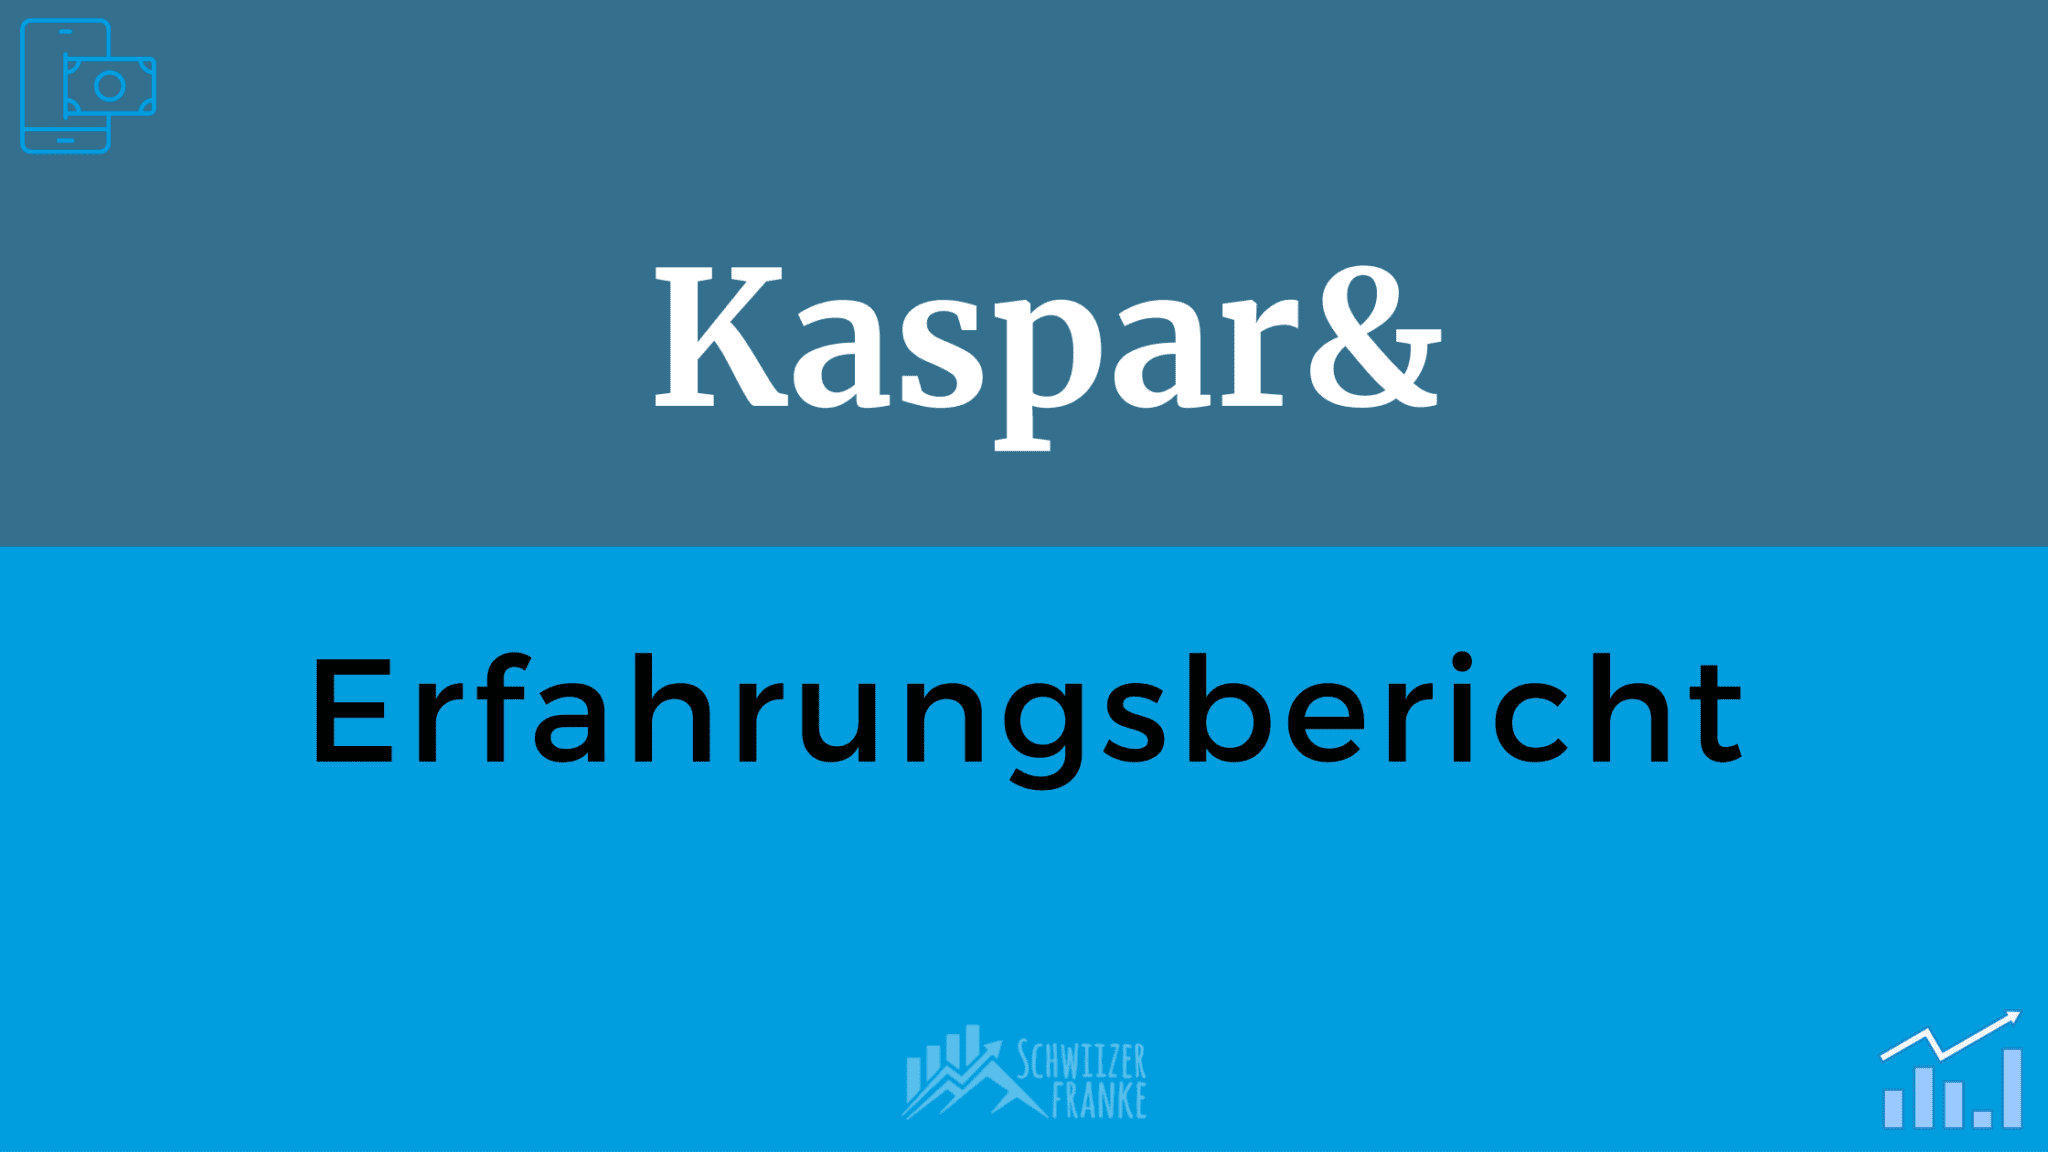 Kaspar& Review Switzerland KasparUnd Experience Kaspar& Review Test KasparUnd Fees Round Up Investing